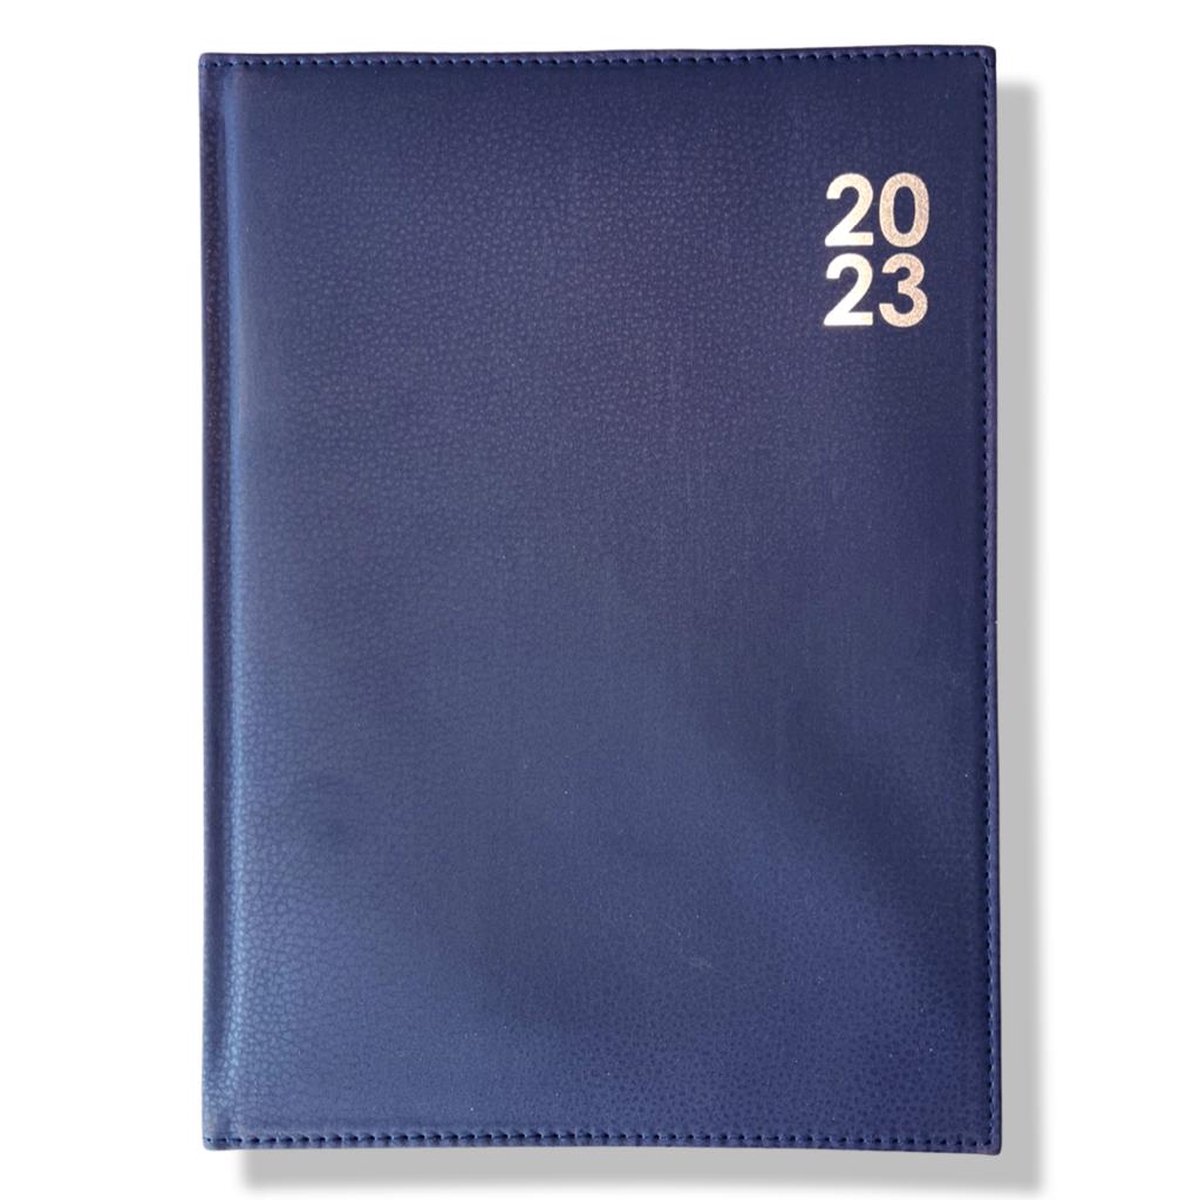 A5 Dag Agenda - 2023 - Kunstleder Cover Blauw - 1 d/p - 14,8x21cm